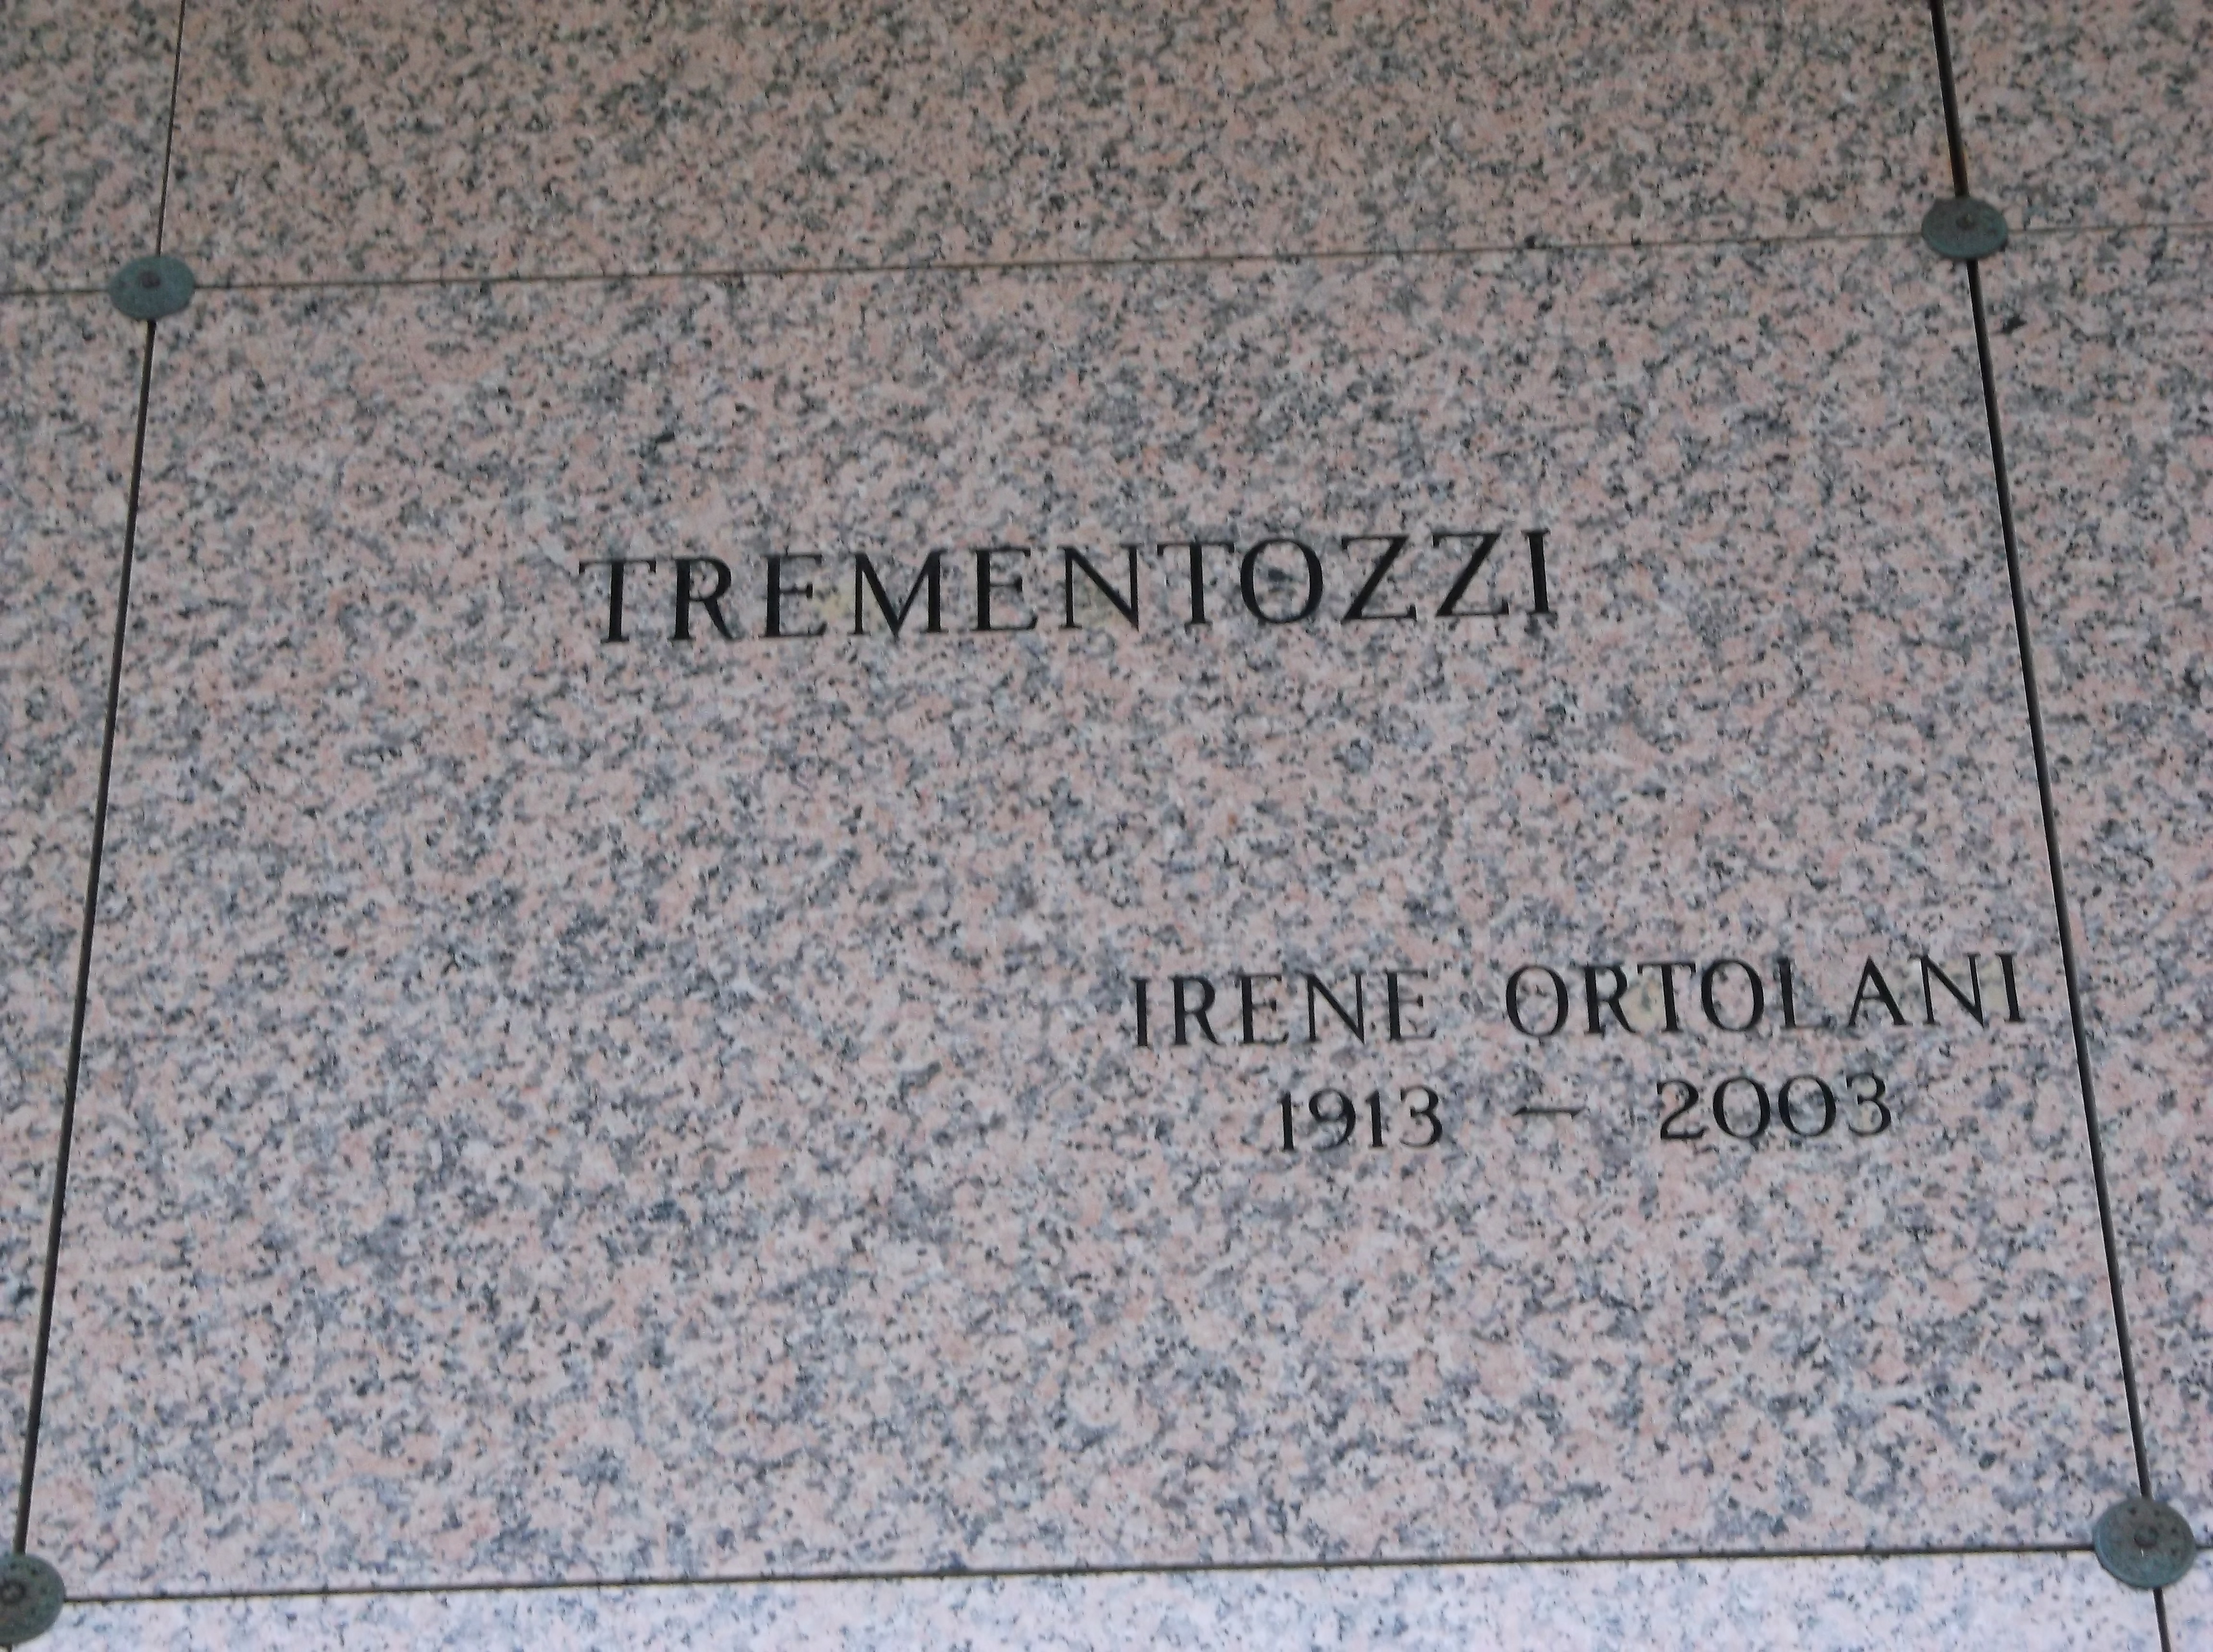 Irene Ortolani Trementozzi